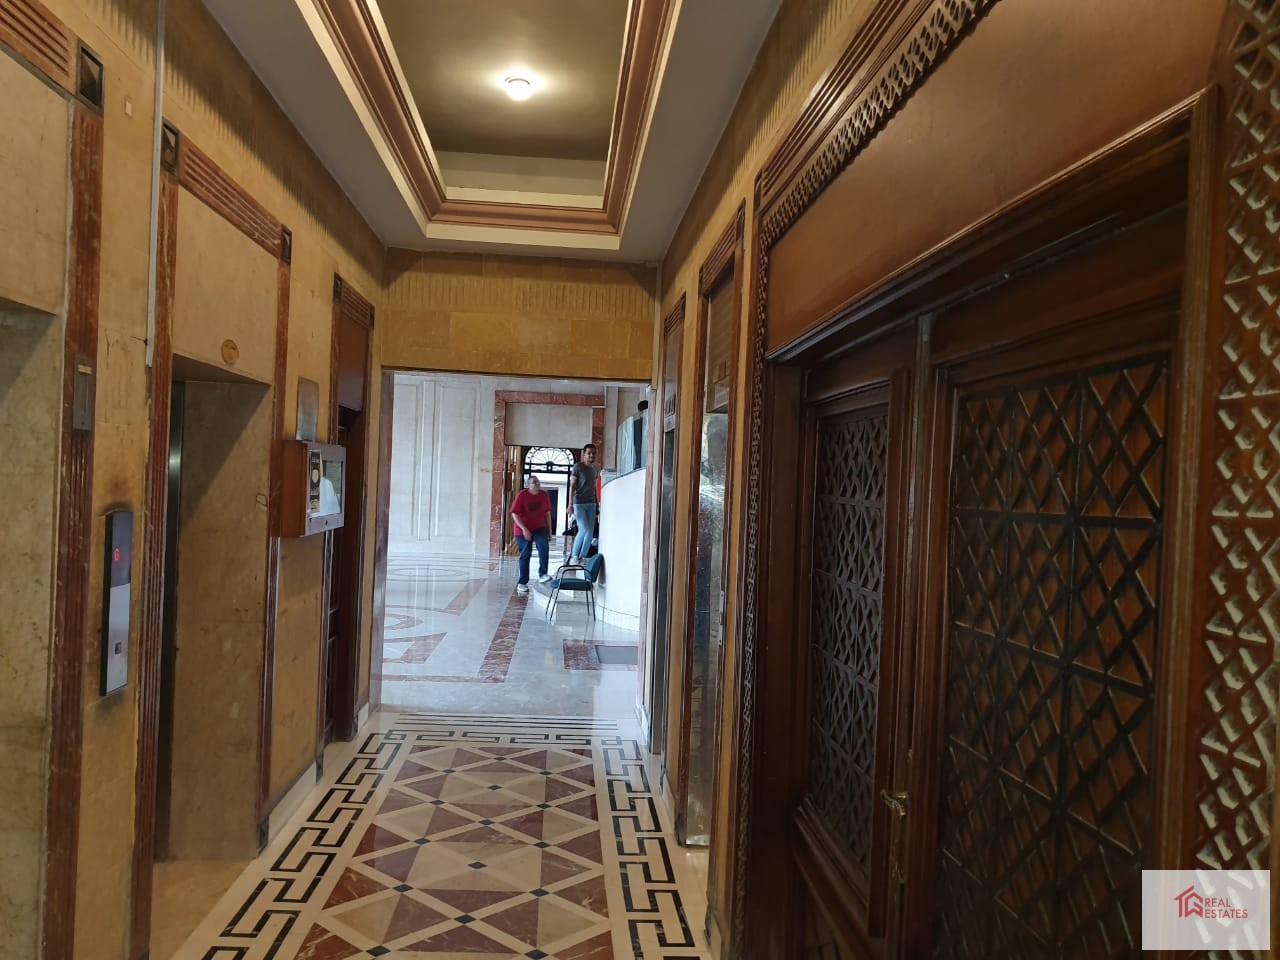 Agouza, Giza, Egypt의 임대 아파트 면적: 472m 4개의 방으로 구성되어 있으며 그 중 2개는 욕실을 갖추고 있습니다.